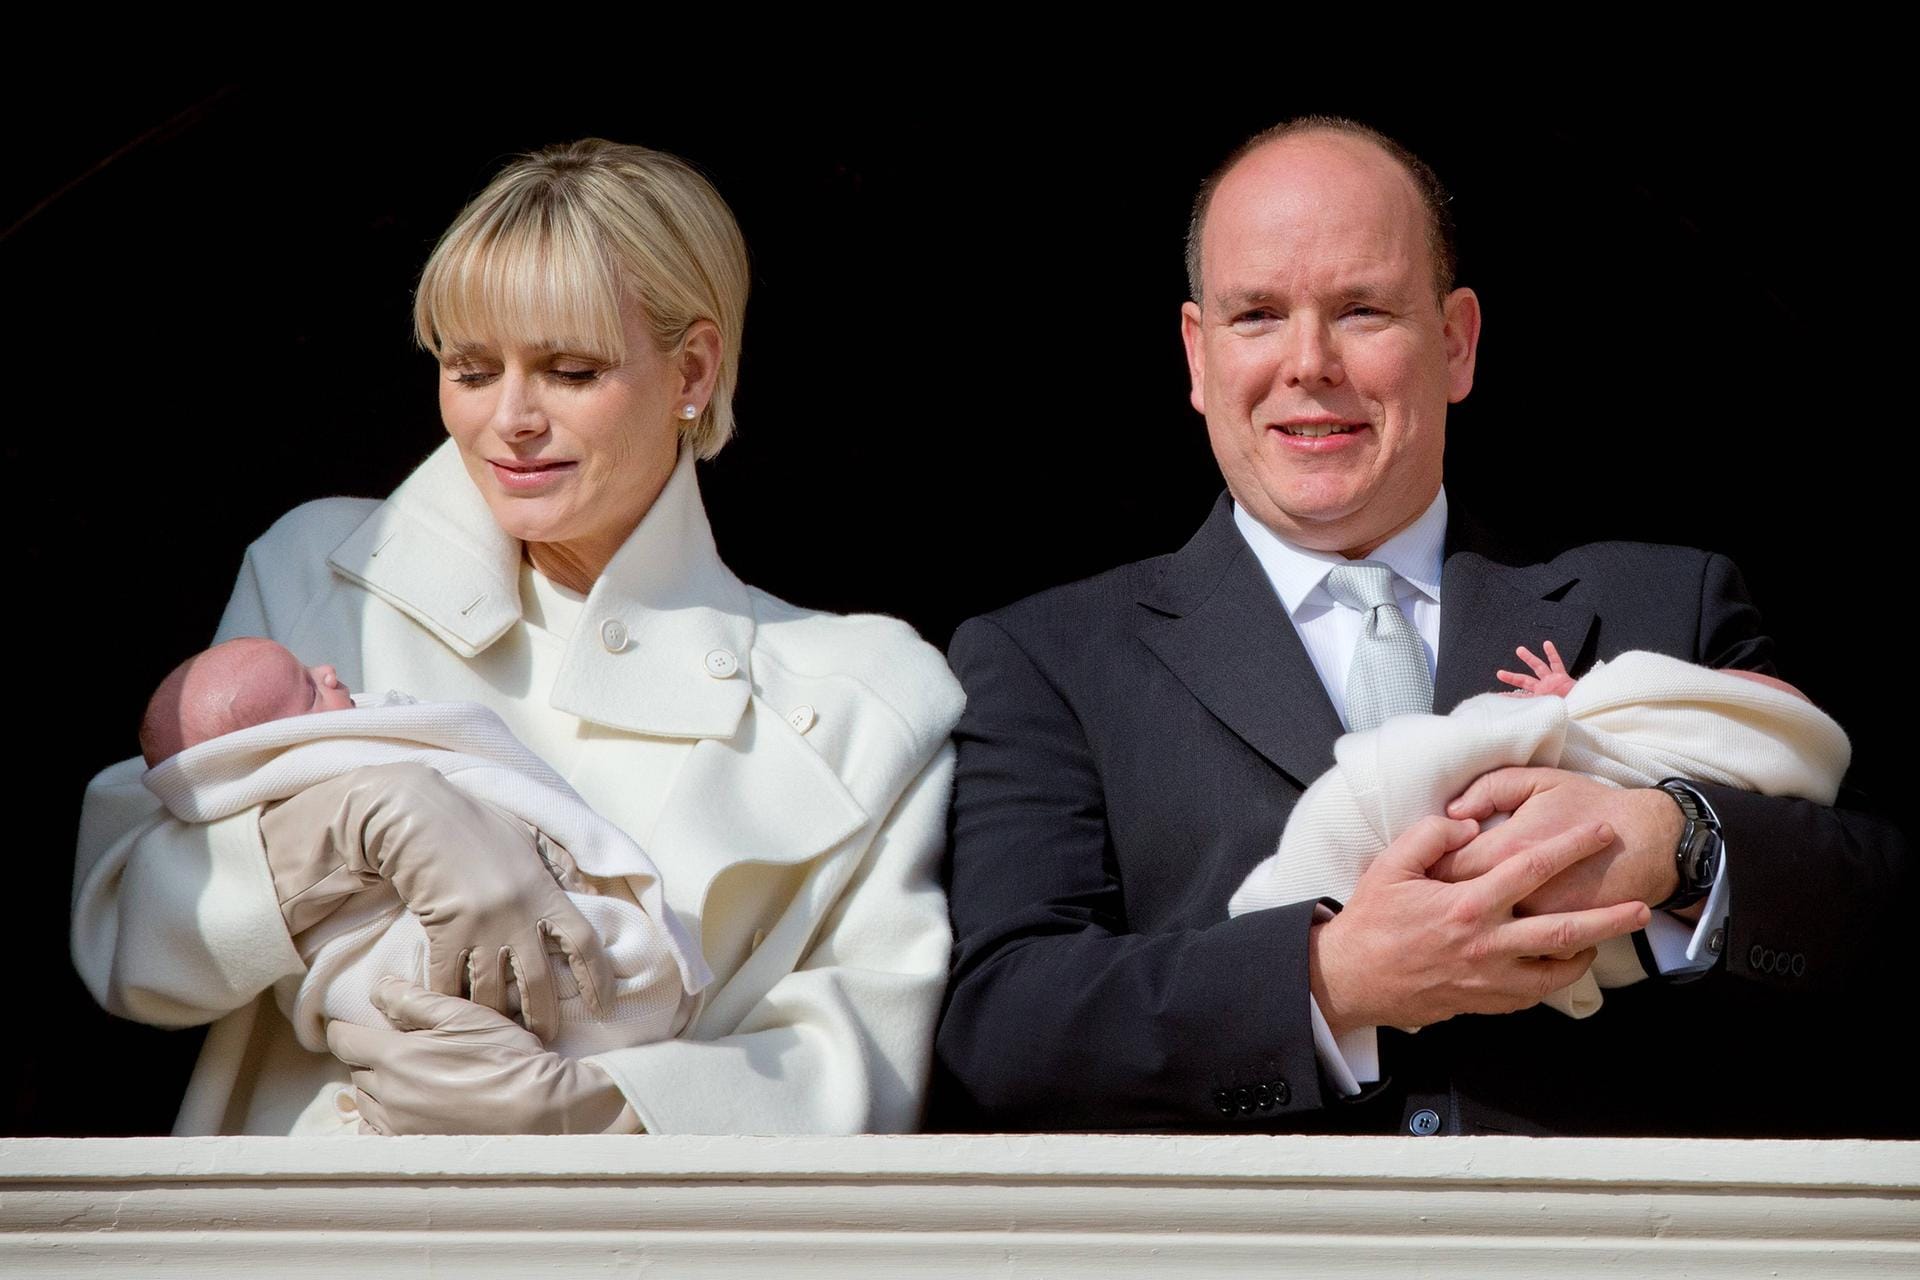 Debüt auf dem Balkon: Im Januar 2015 feiern die Mini-Royals im Arm ihrer Eltern die Premiere vor dem großen Publikum – dem monegassischen Volk.